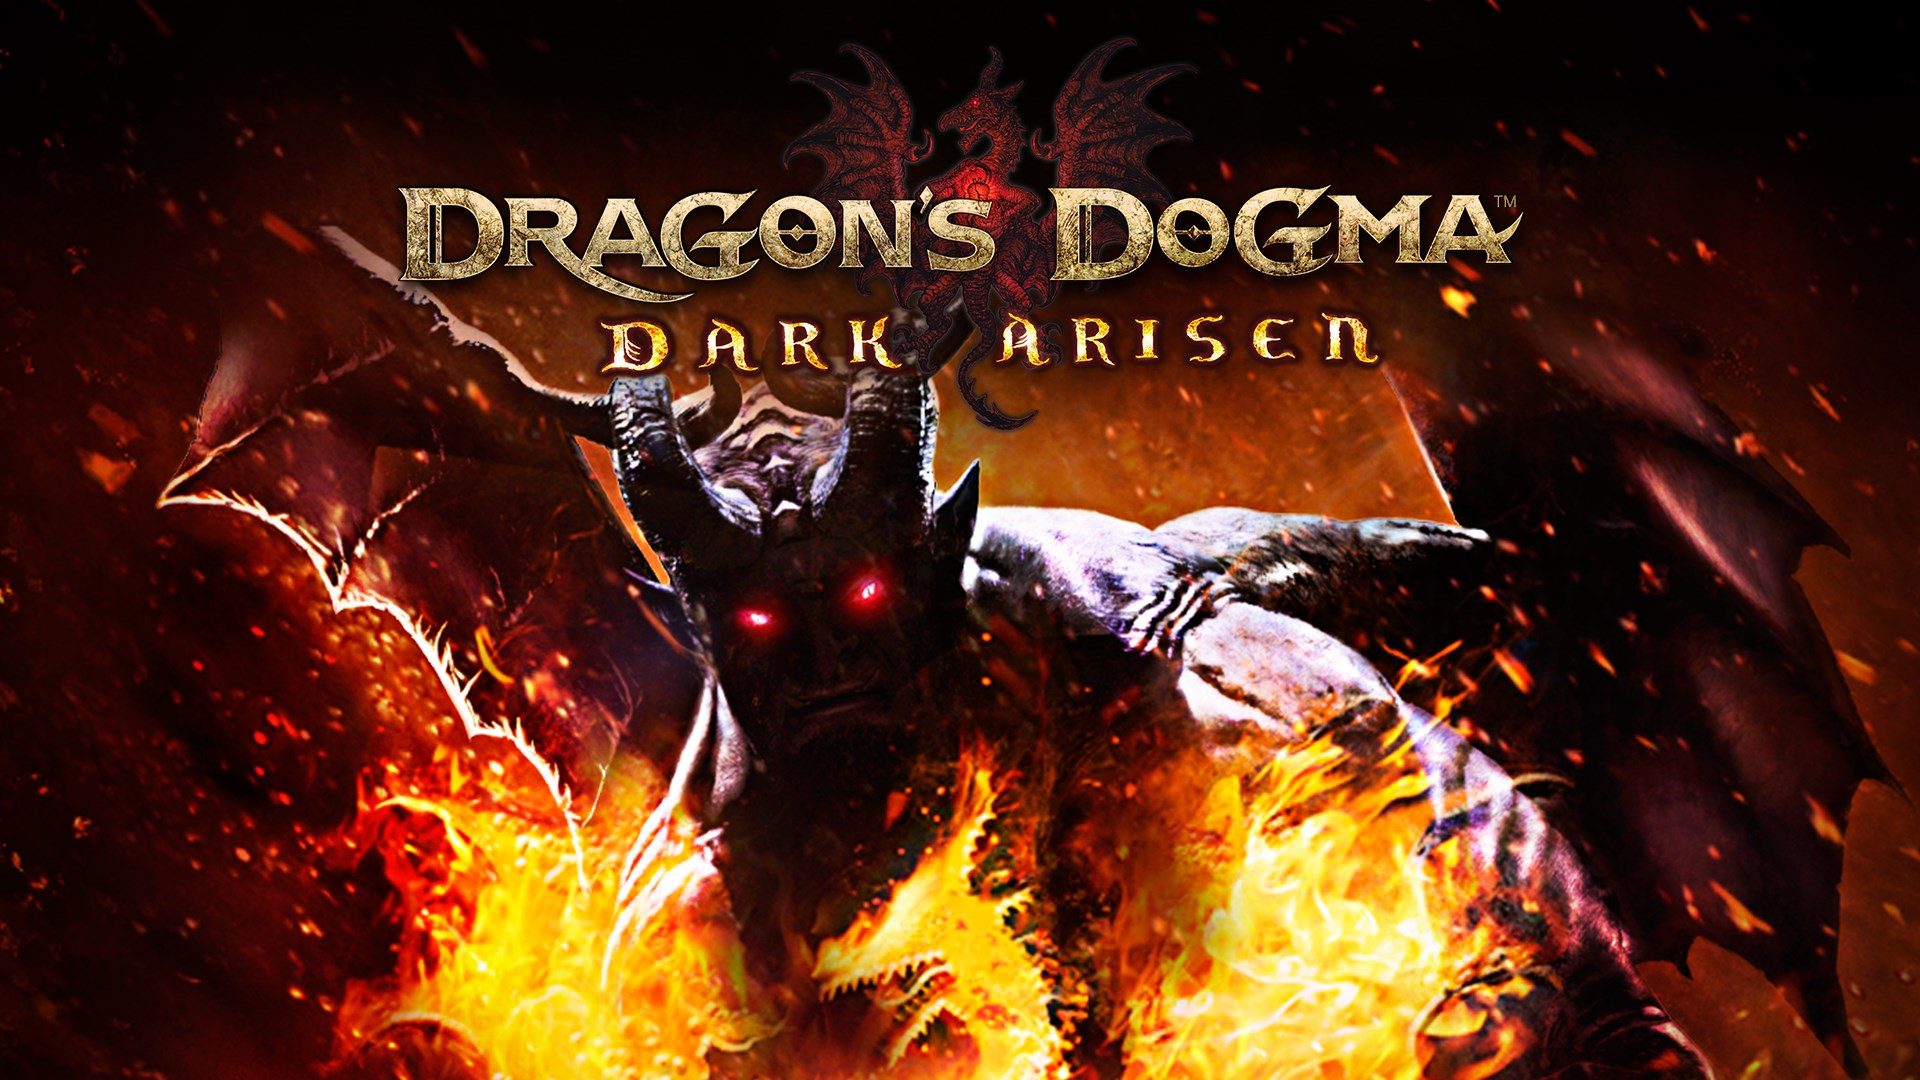 Human Resources achievement in Dragon's Dogma: Dark Arisen